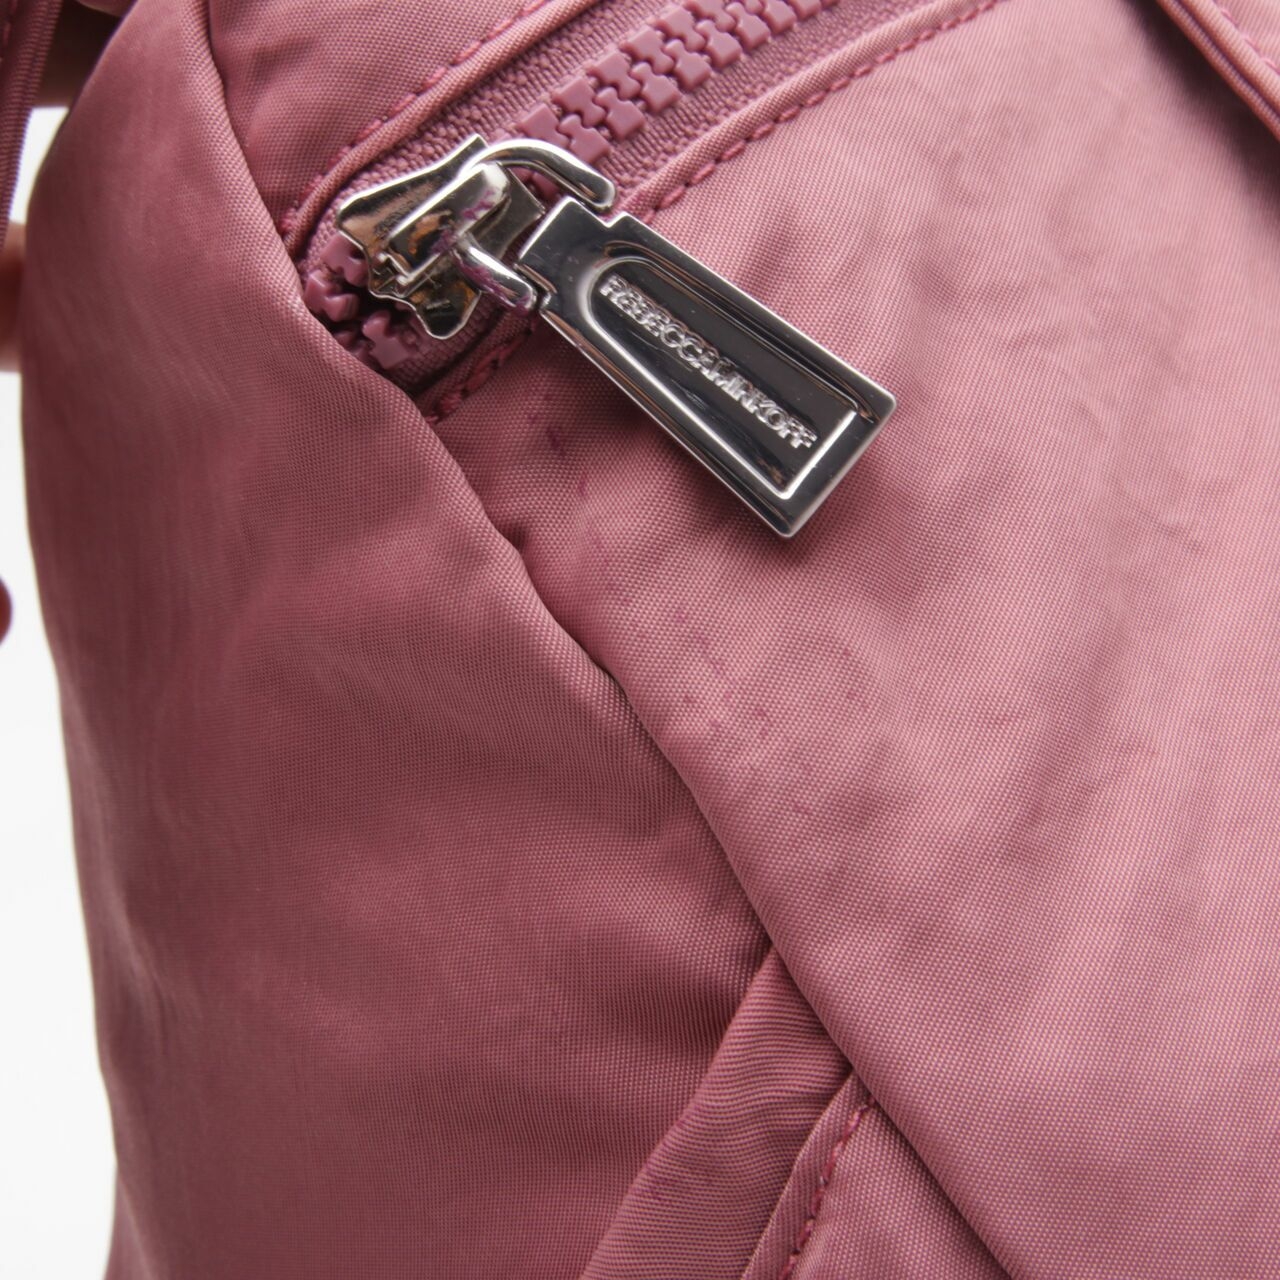 Rebbecca Minkoff Pink Backpack